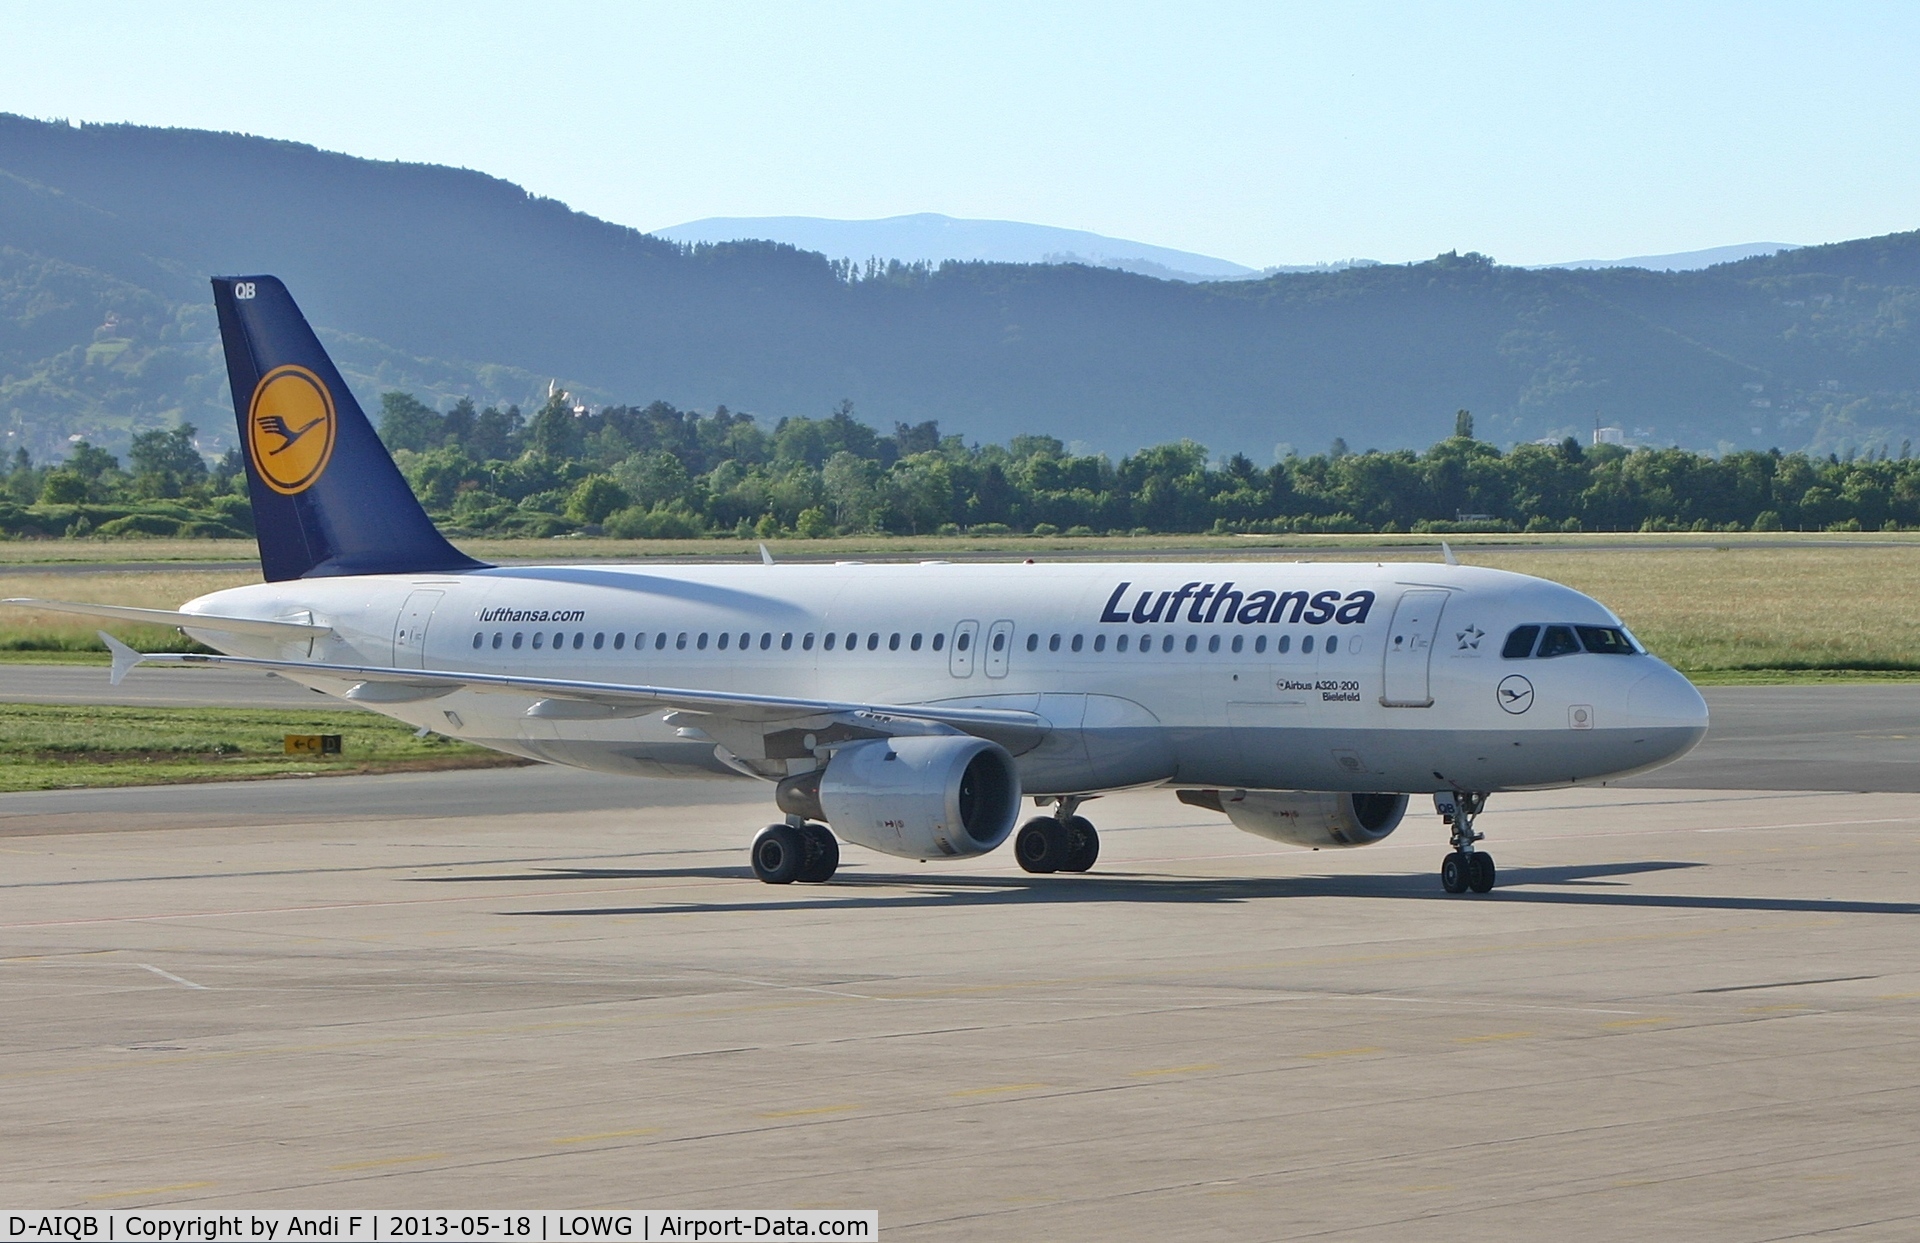 D-AIQB, 1991 Airbus A320-211 C/N 0200, Lufthansa Airbus A320-211